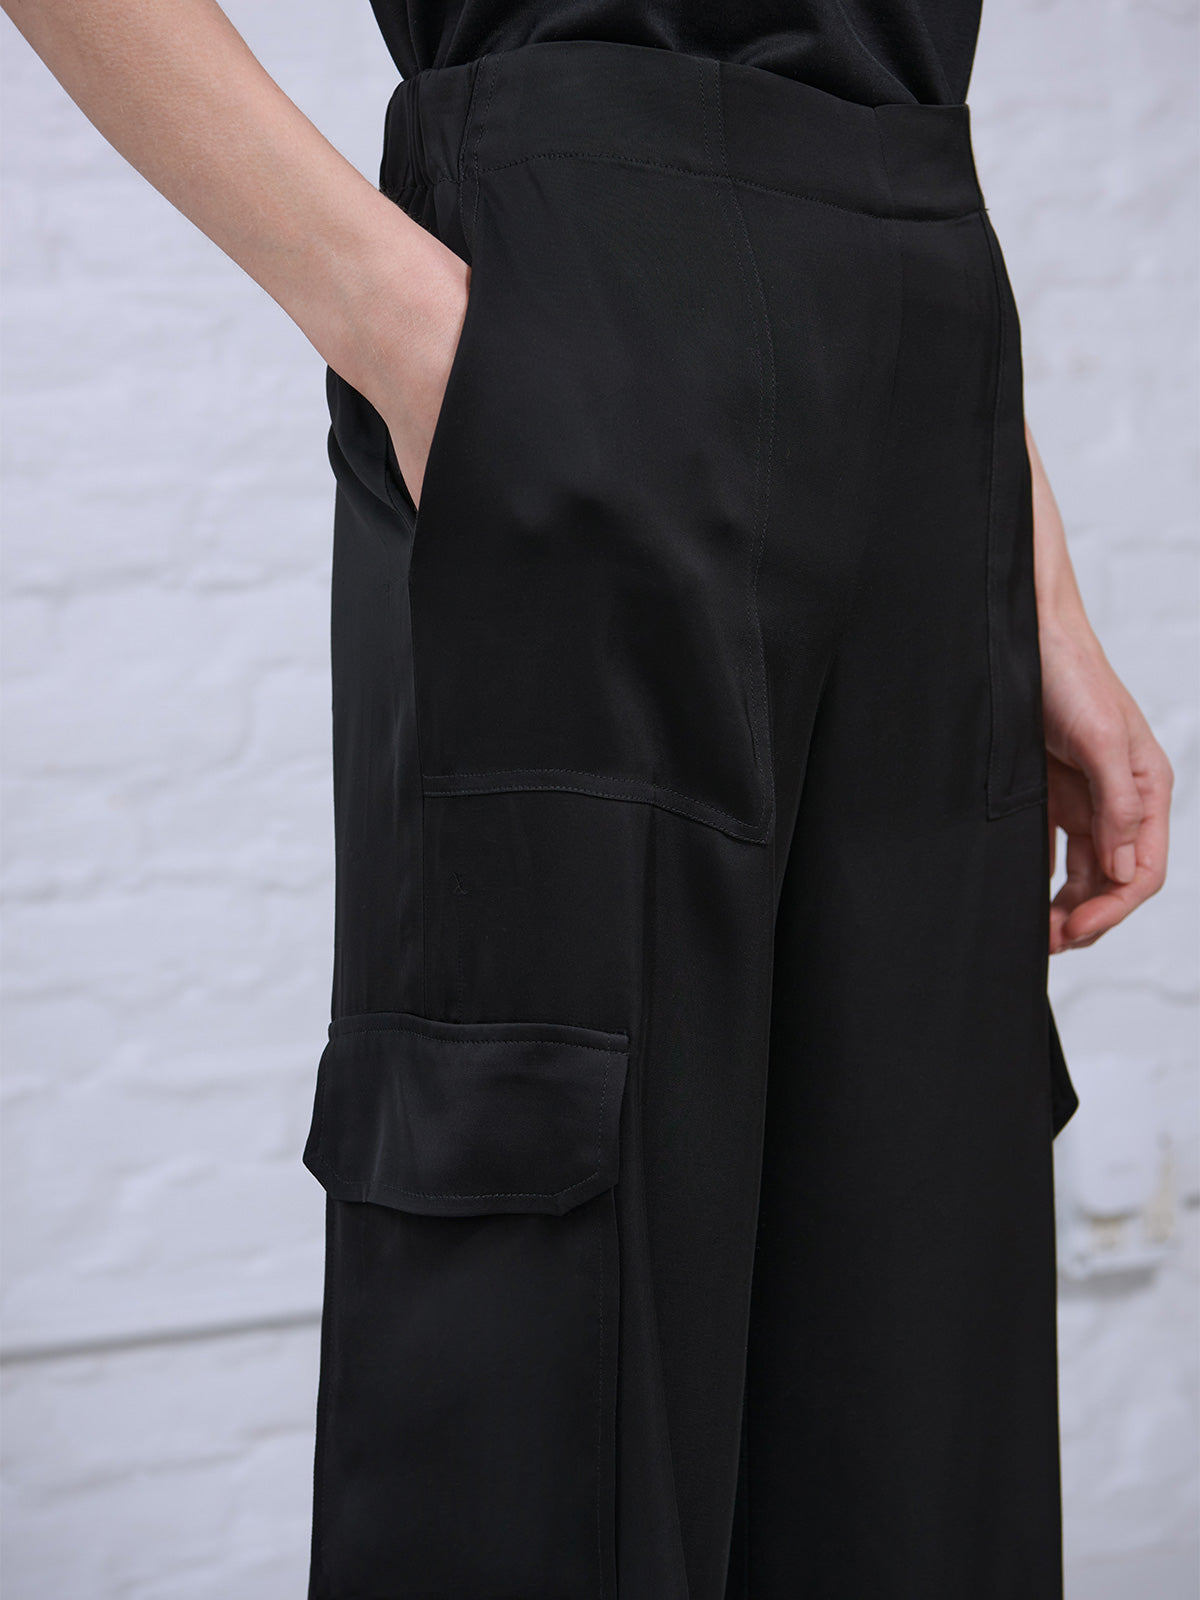 Tibi New York Womens Black Flare Leg Dress Pants Size 2